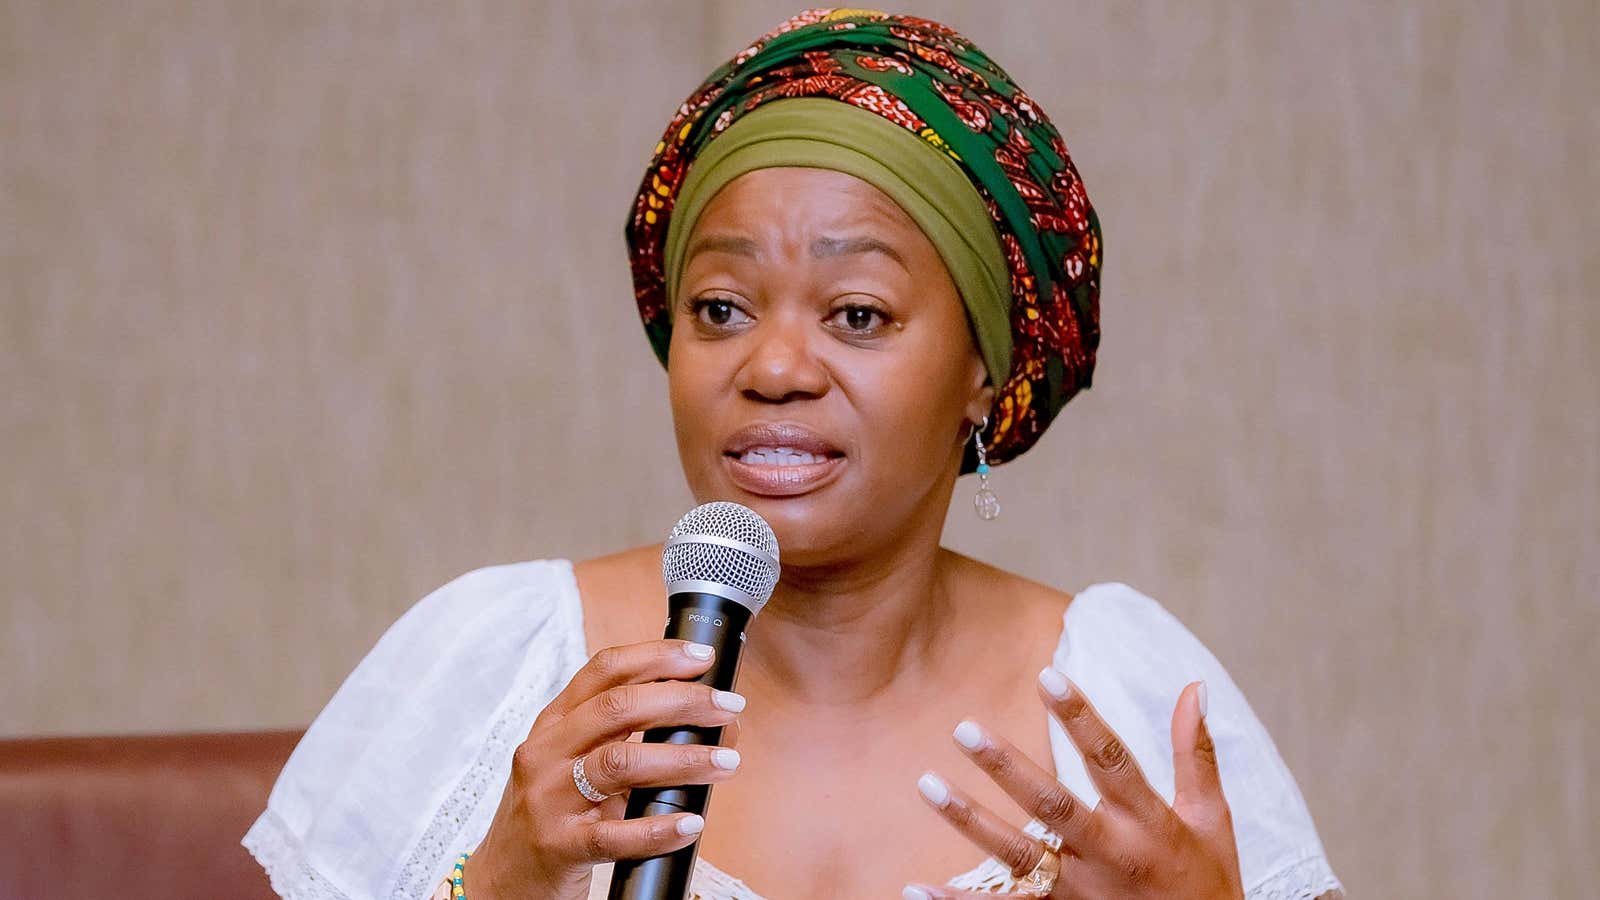 Tsitsi Masiyiwa is putting her millions into reducing Africa's gender gap